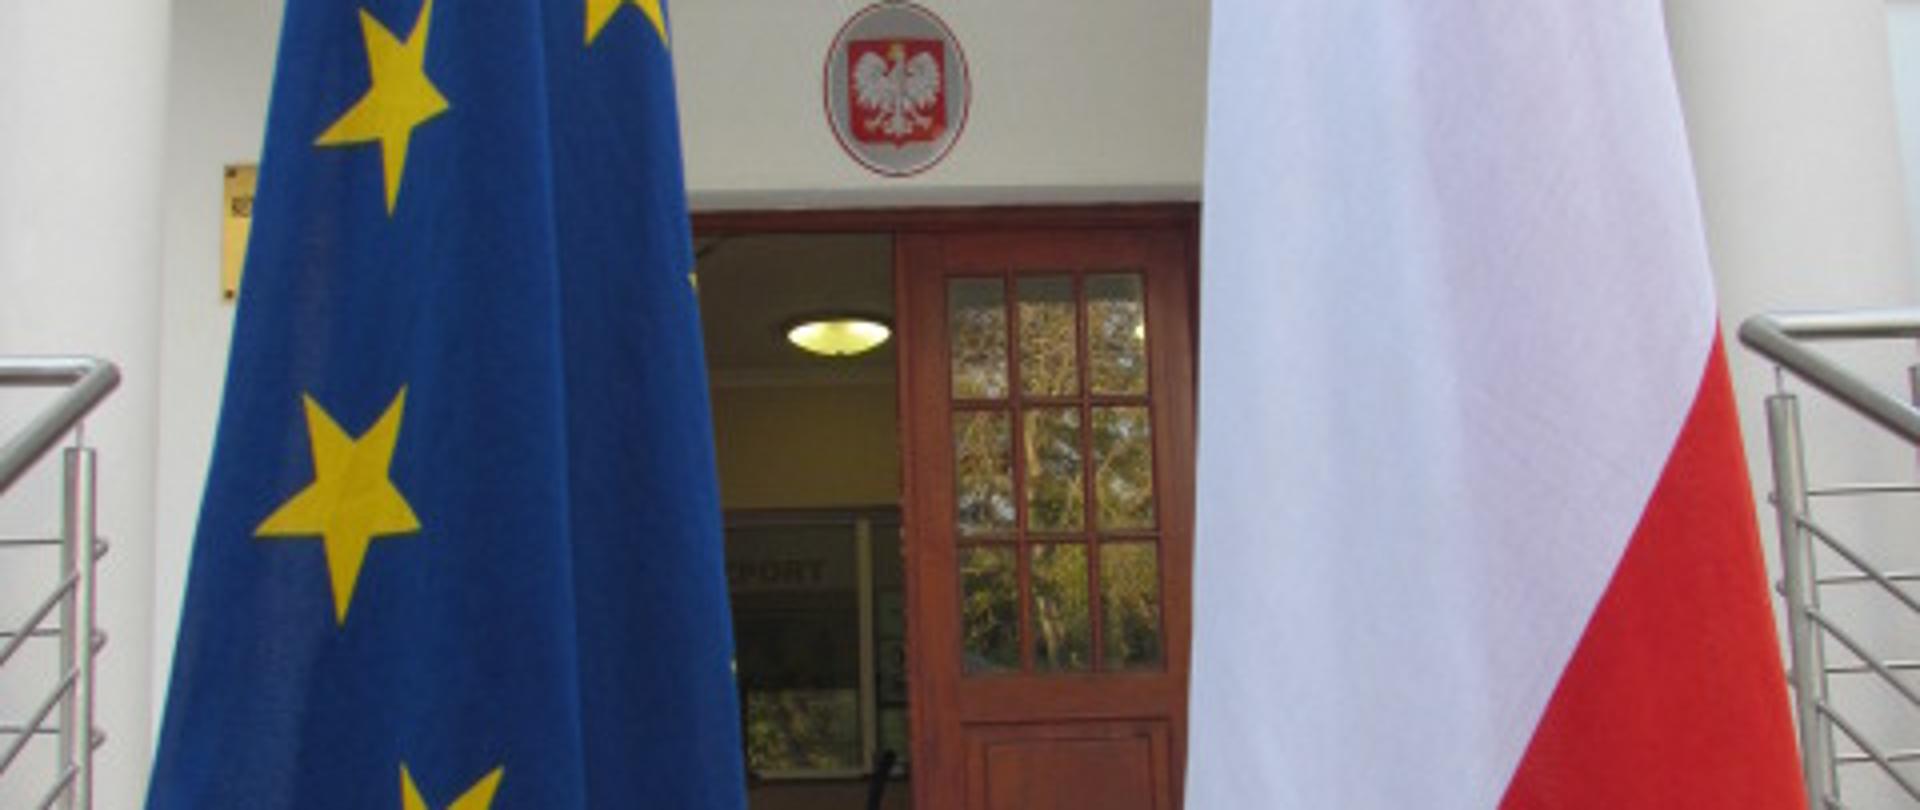 Flagi RP i UE